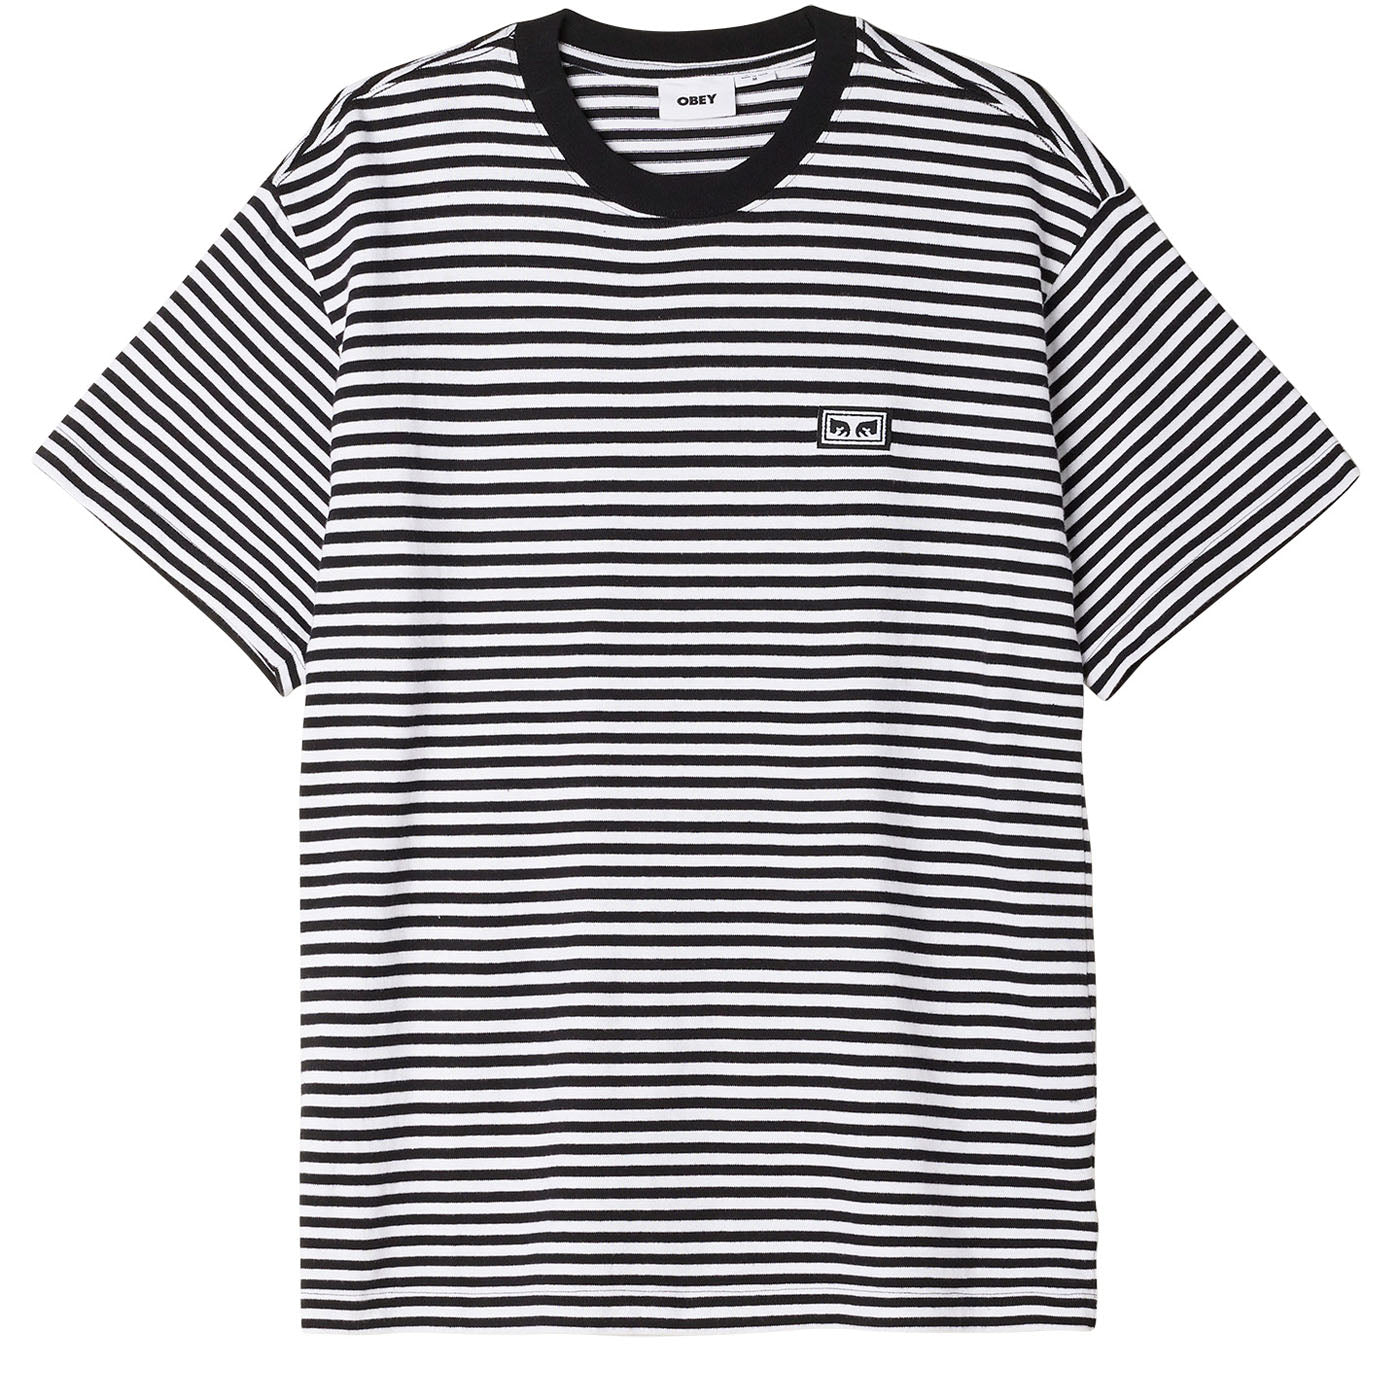 Obey Established Works Stripe T-Shirt - Black